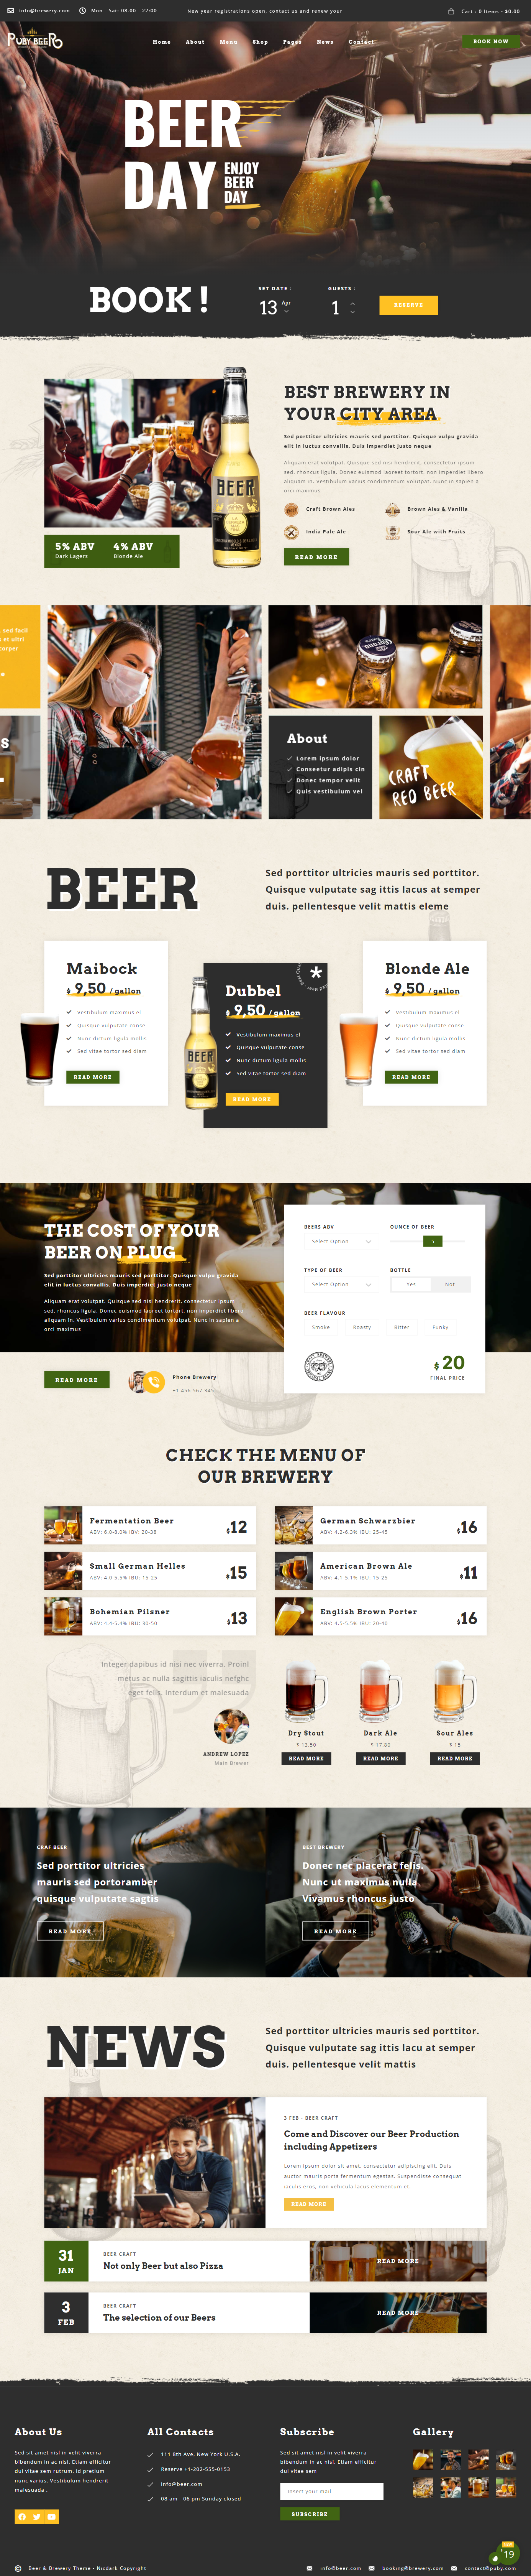 mẫu giao diện website nhà hàng puby beer